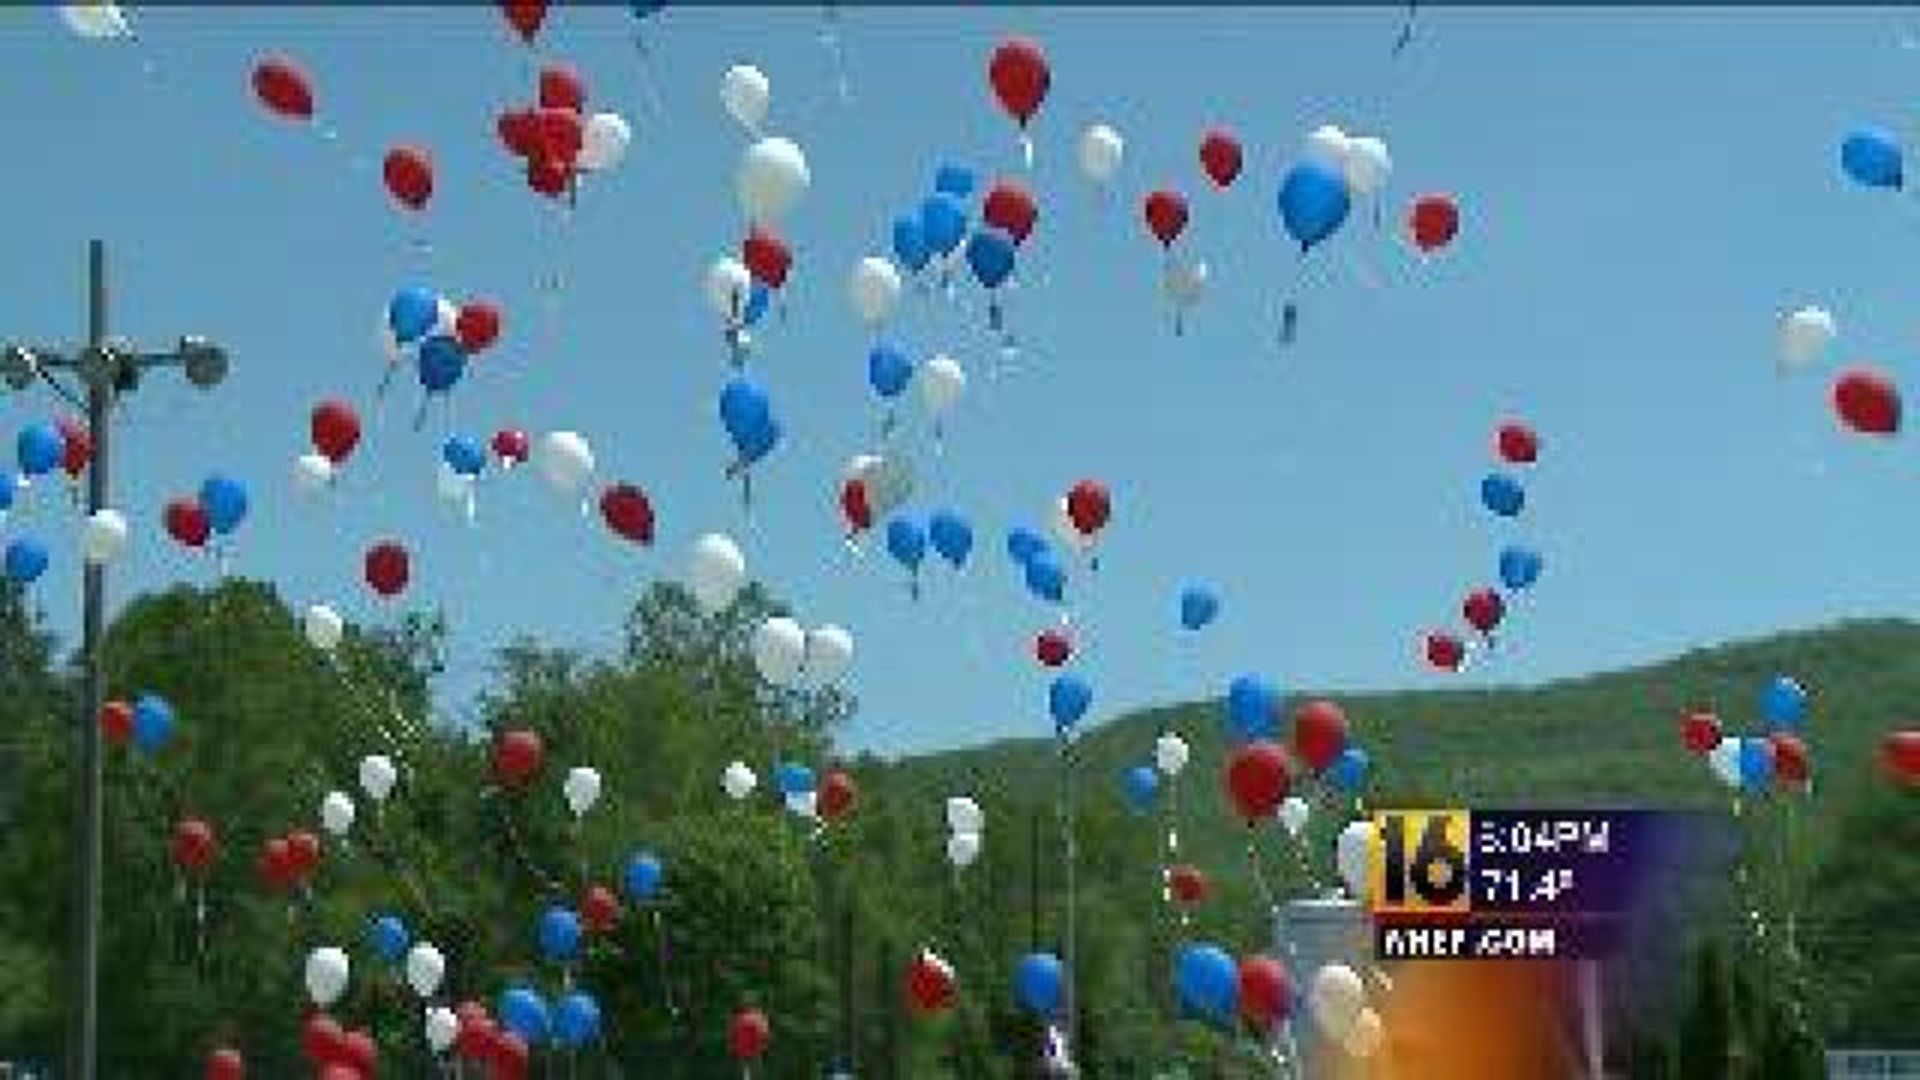 Hundreds of Balloons Honoring the Fallen